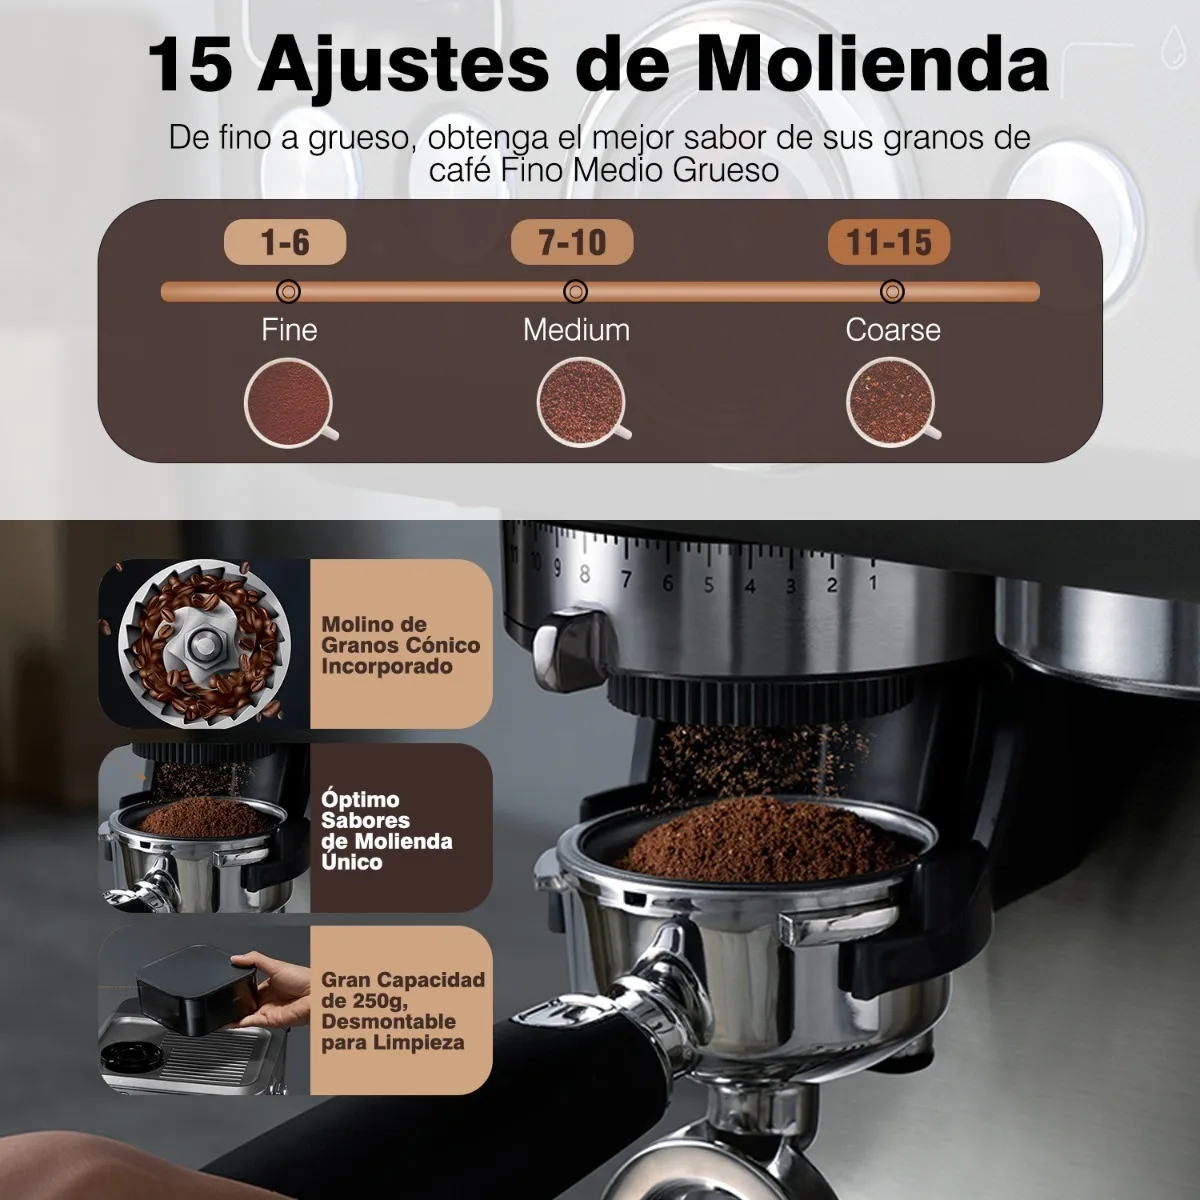 Cafetera que muele el grano de café, cómo funciona